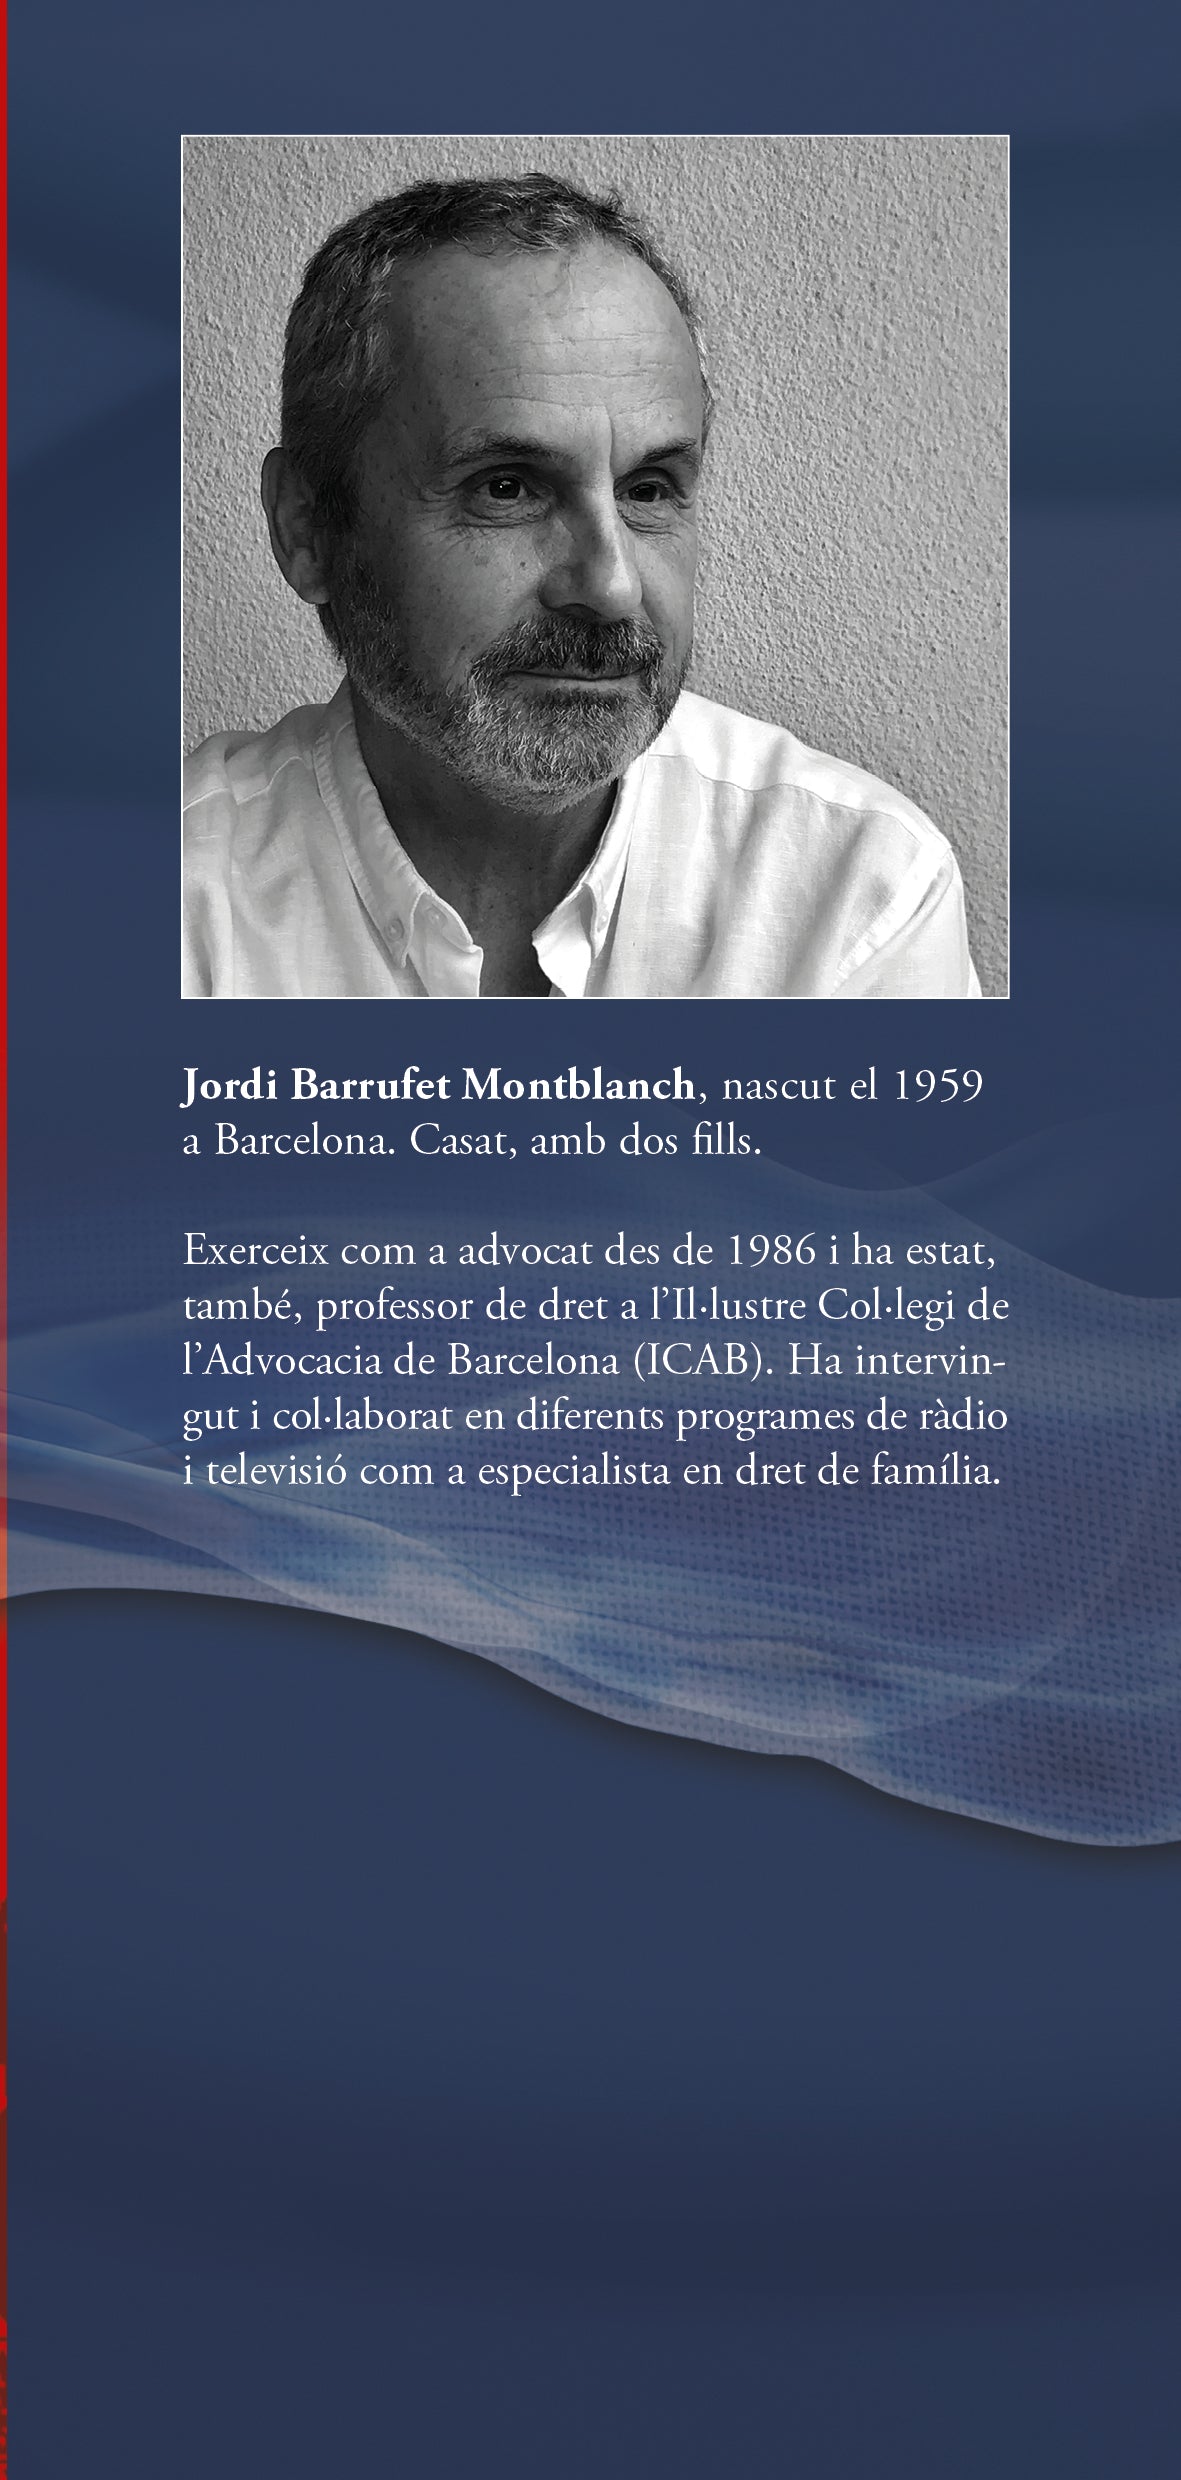 Jordi Barrufet Montblanch, escriptor, escritor